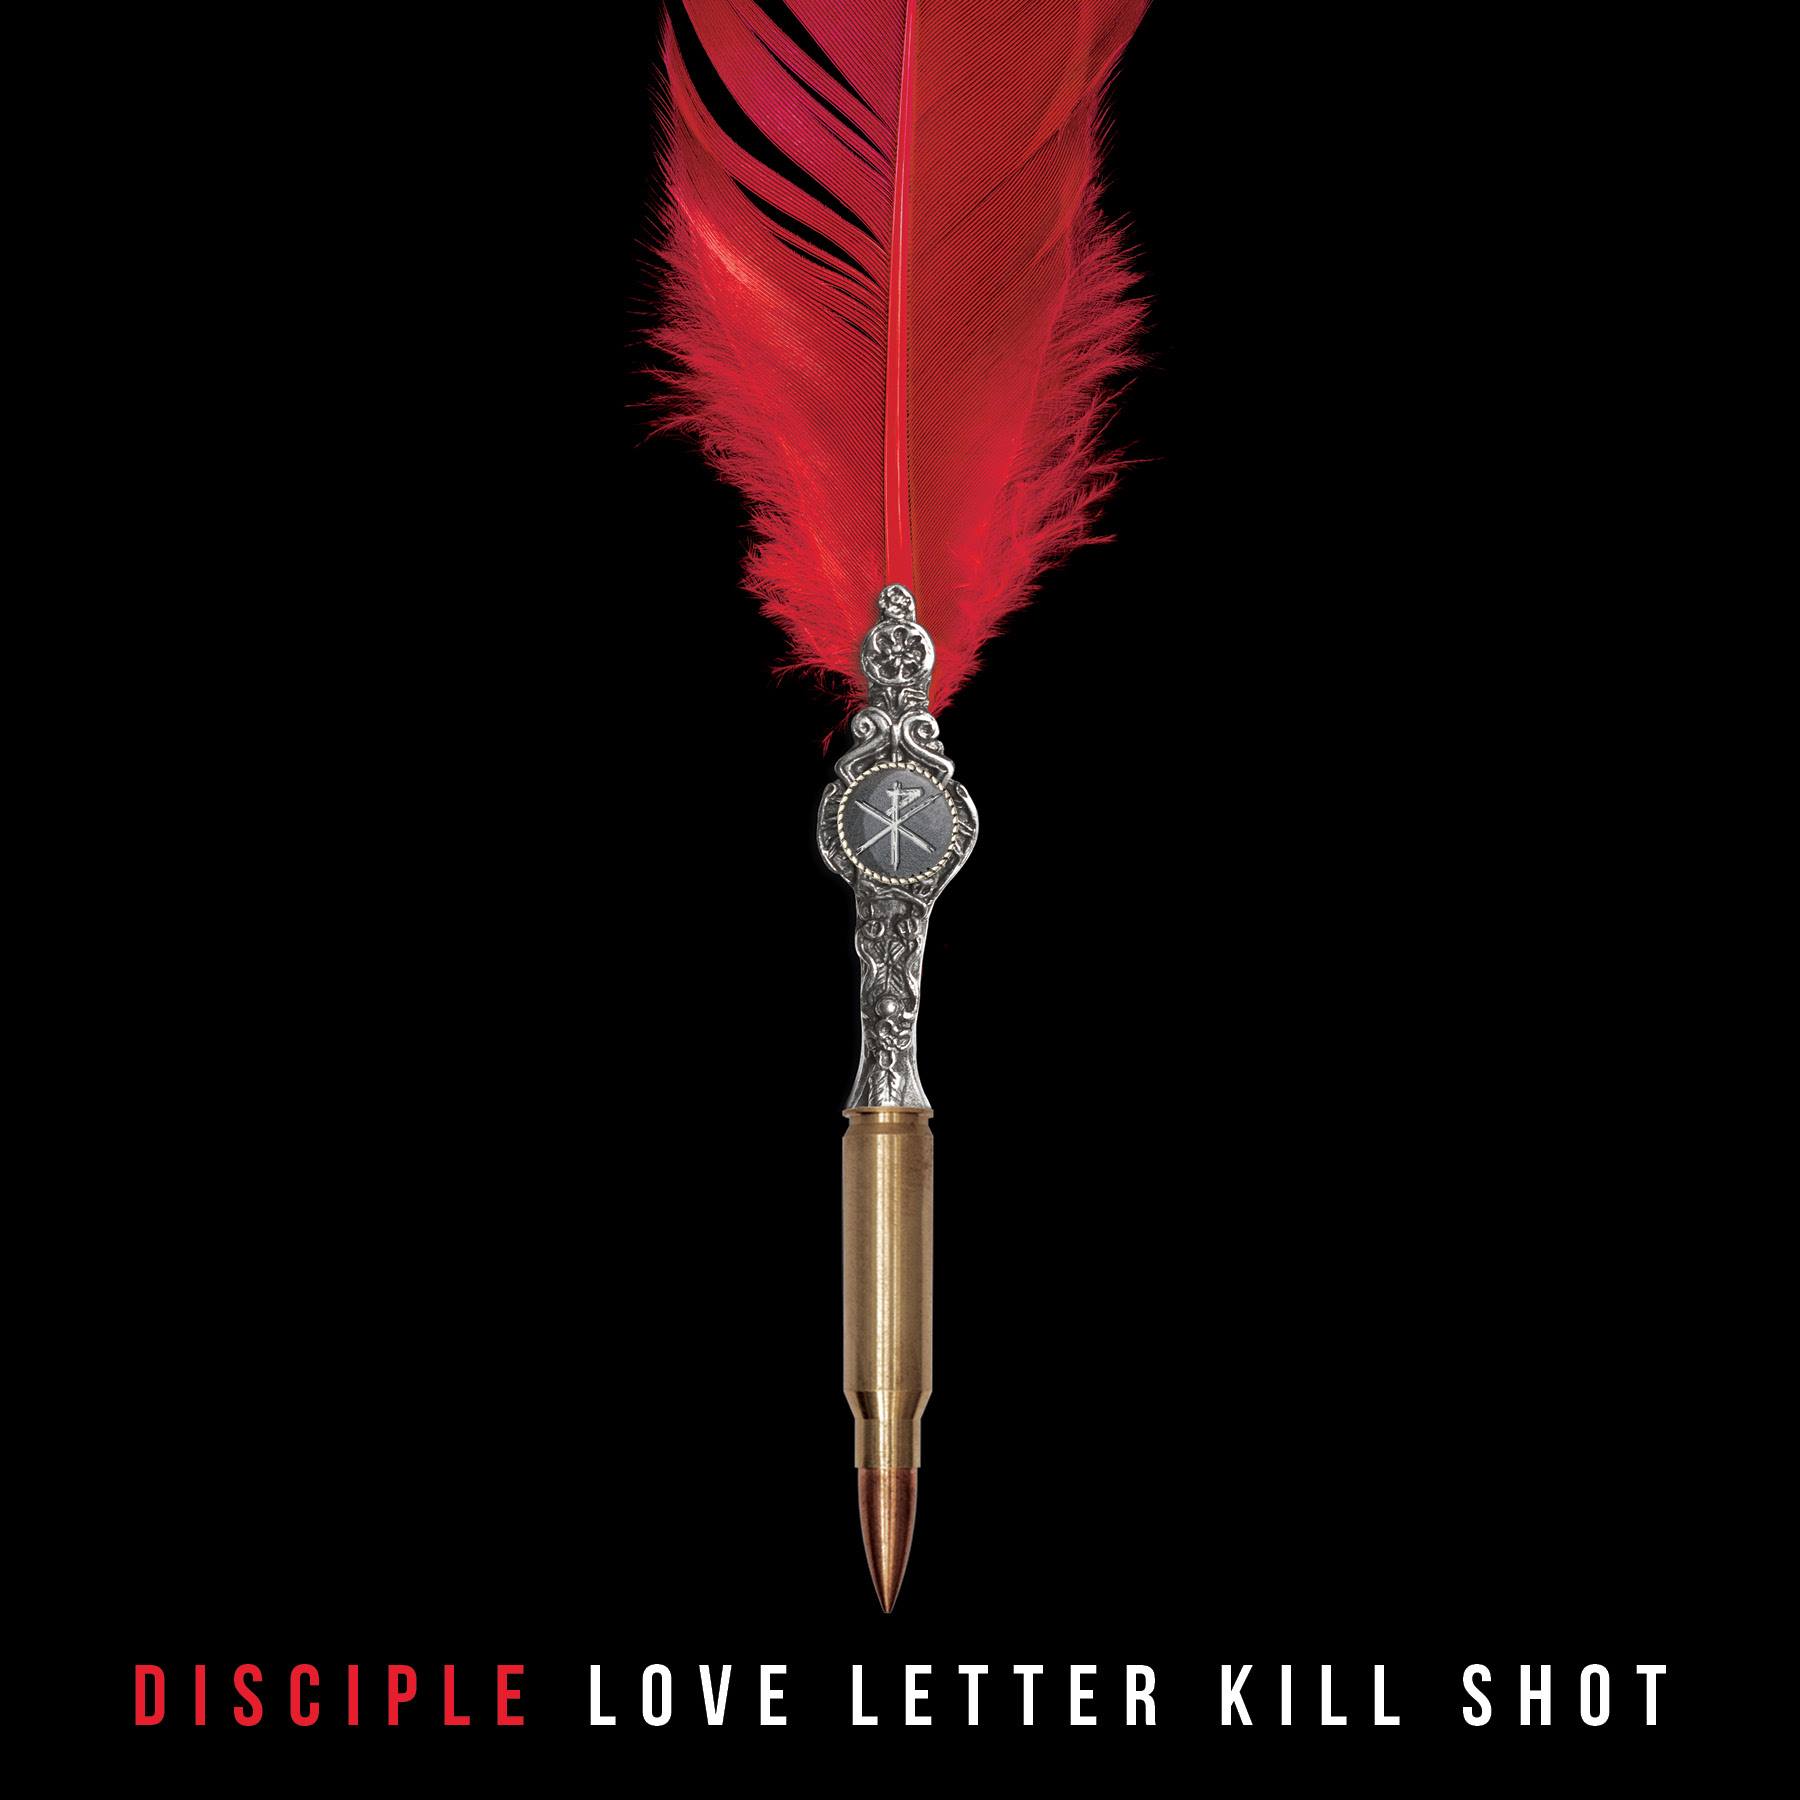 Disciple - Love Letter Kill Shot (2019)